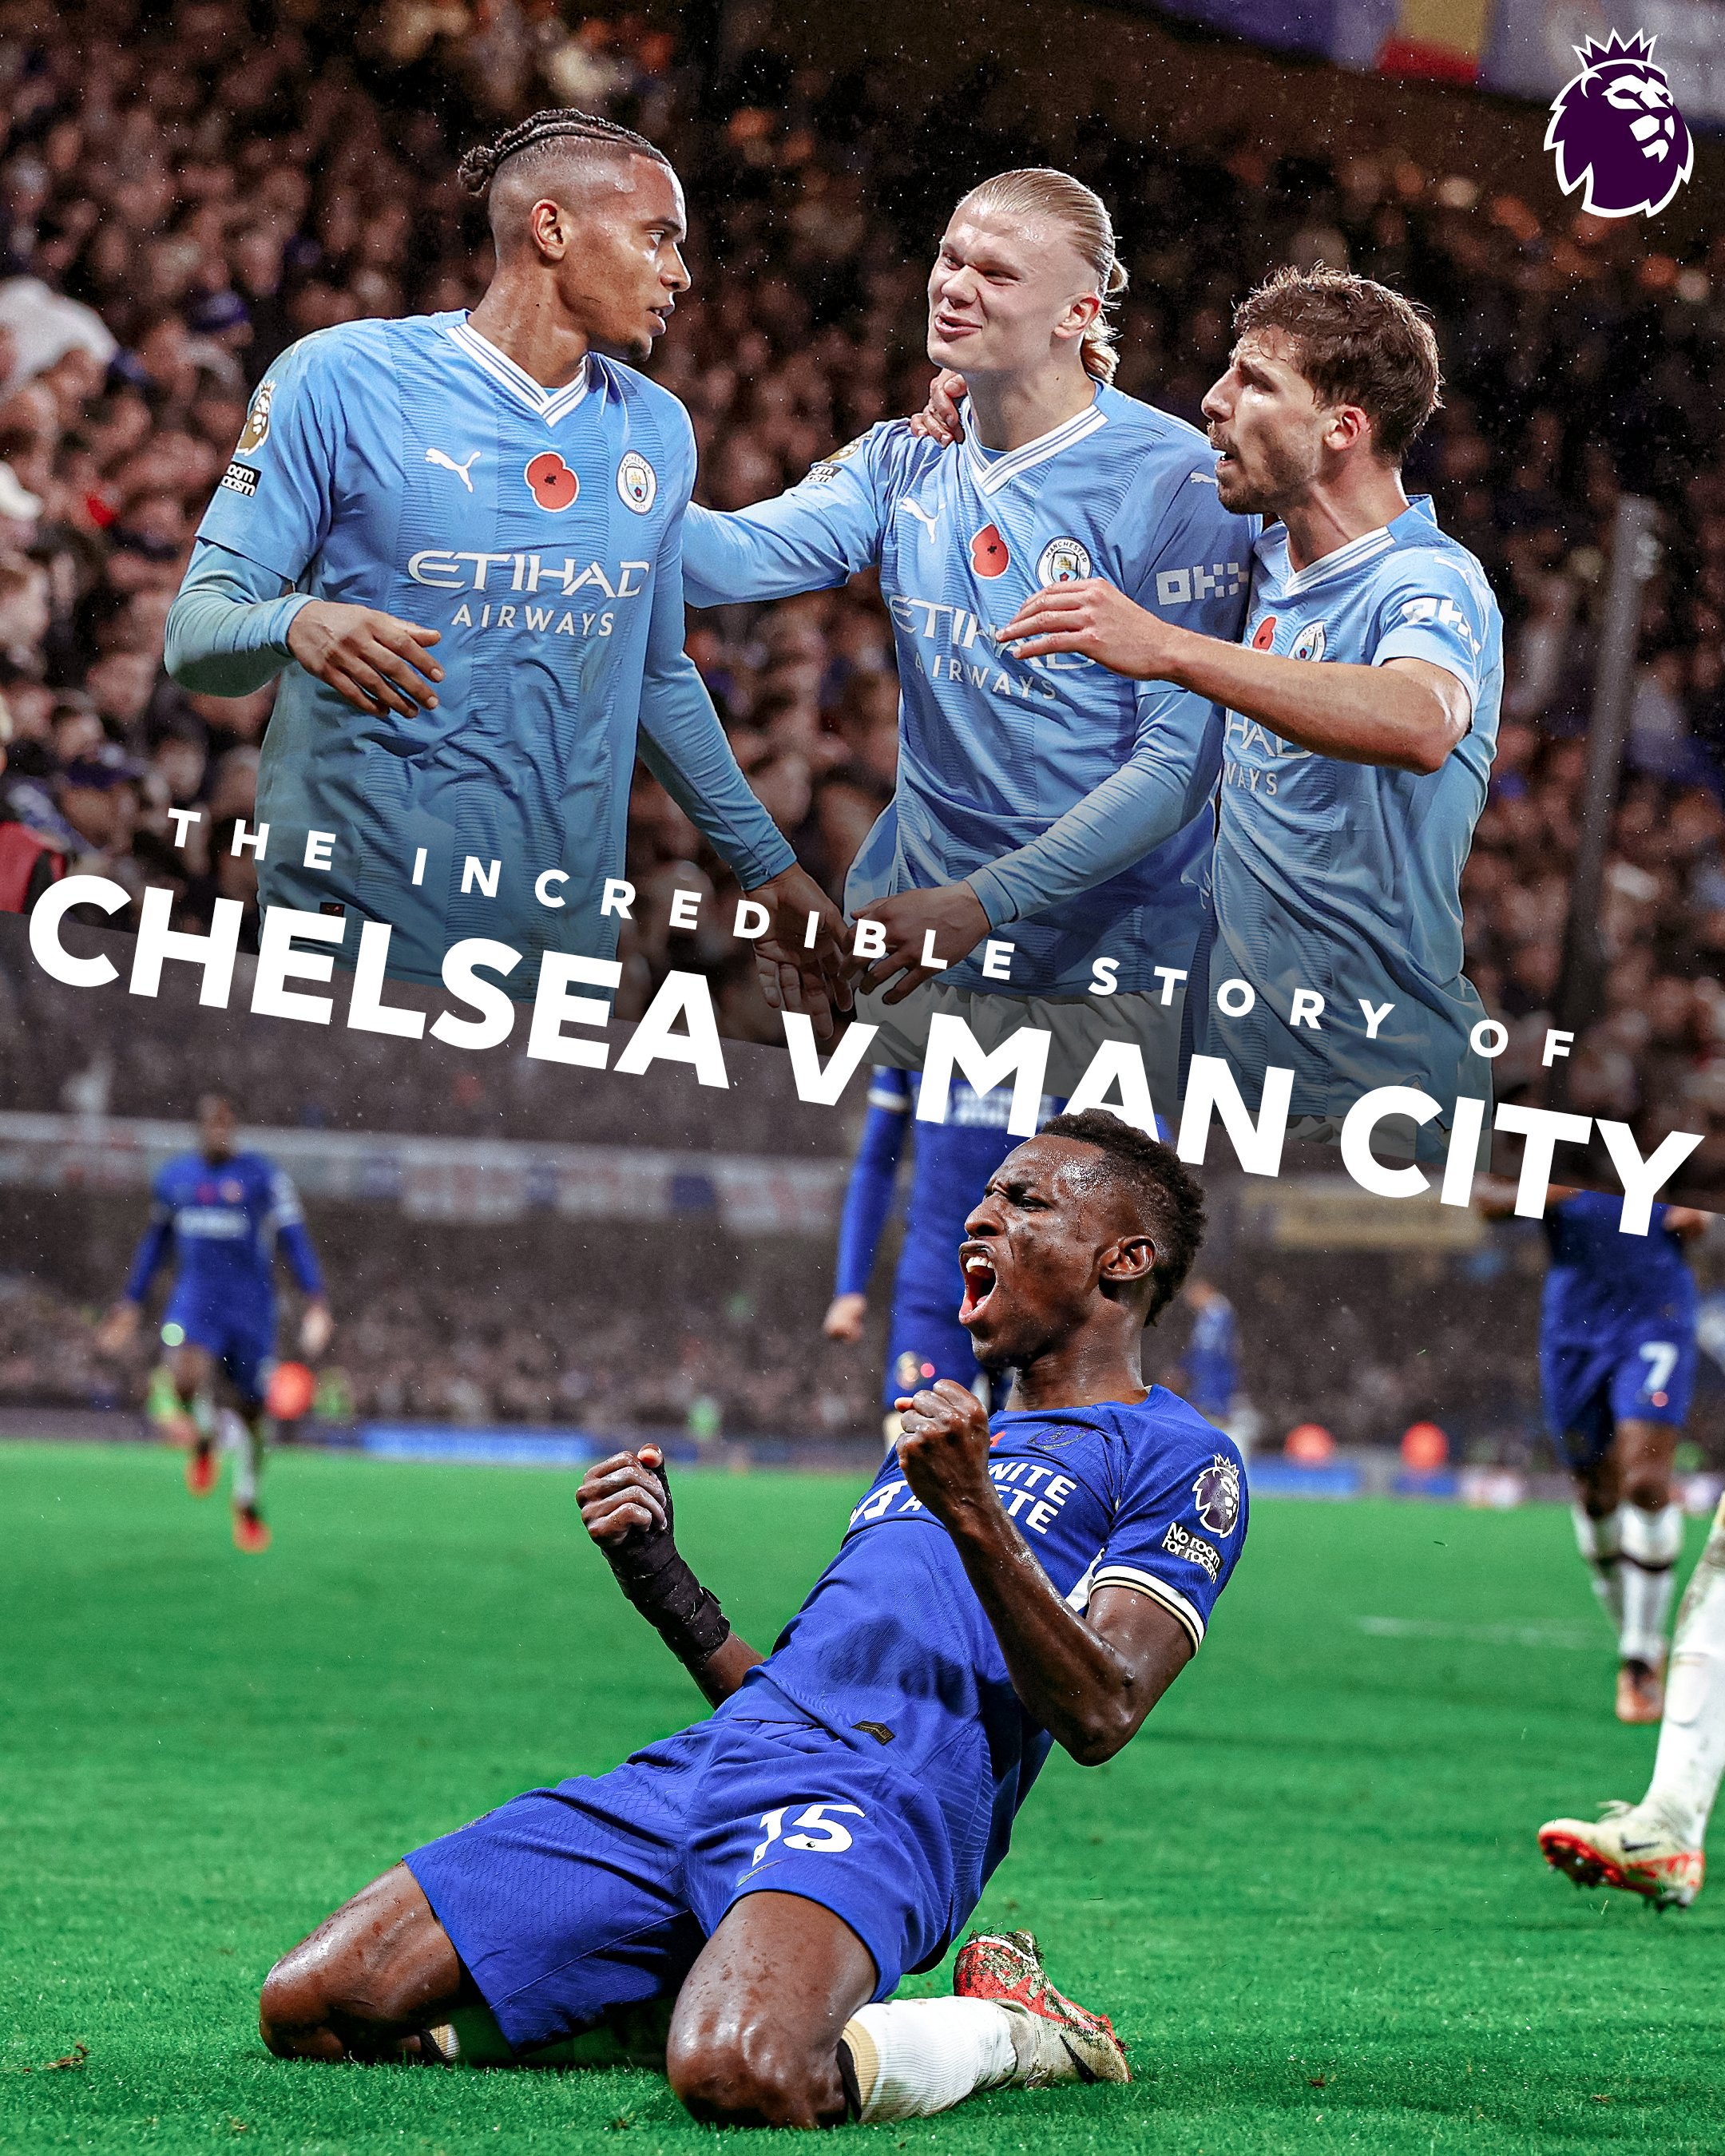 Chelsea v City